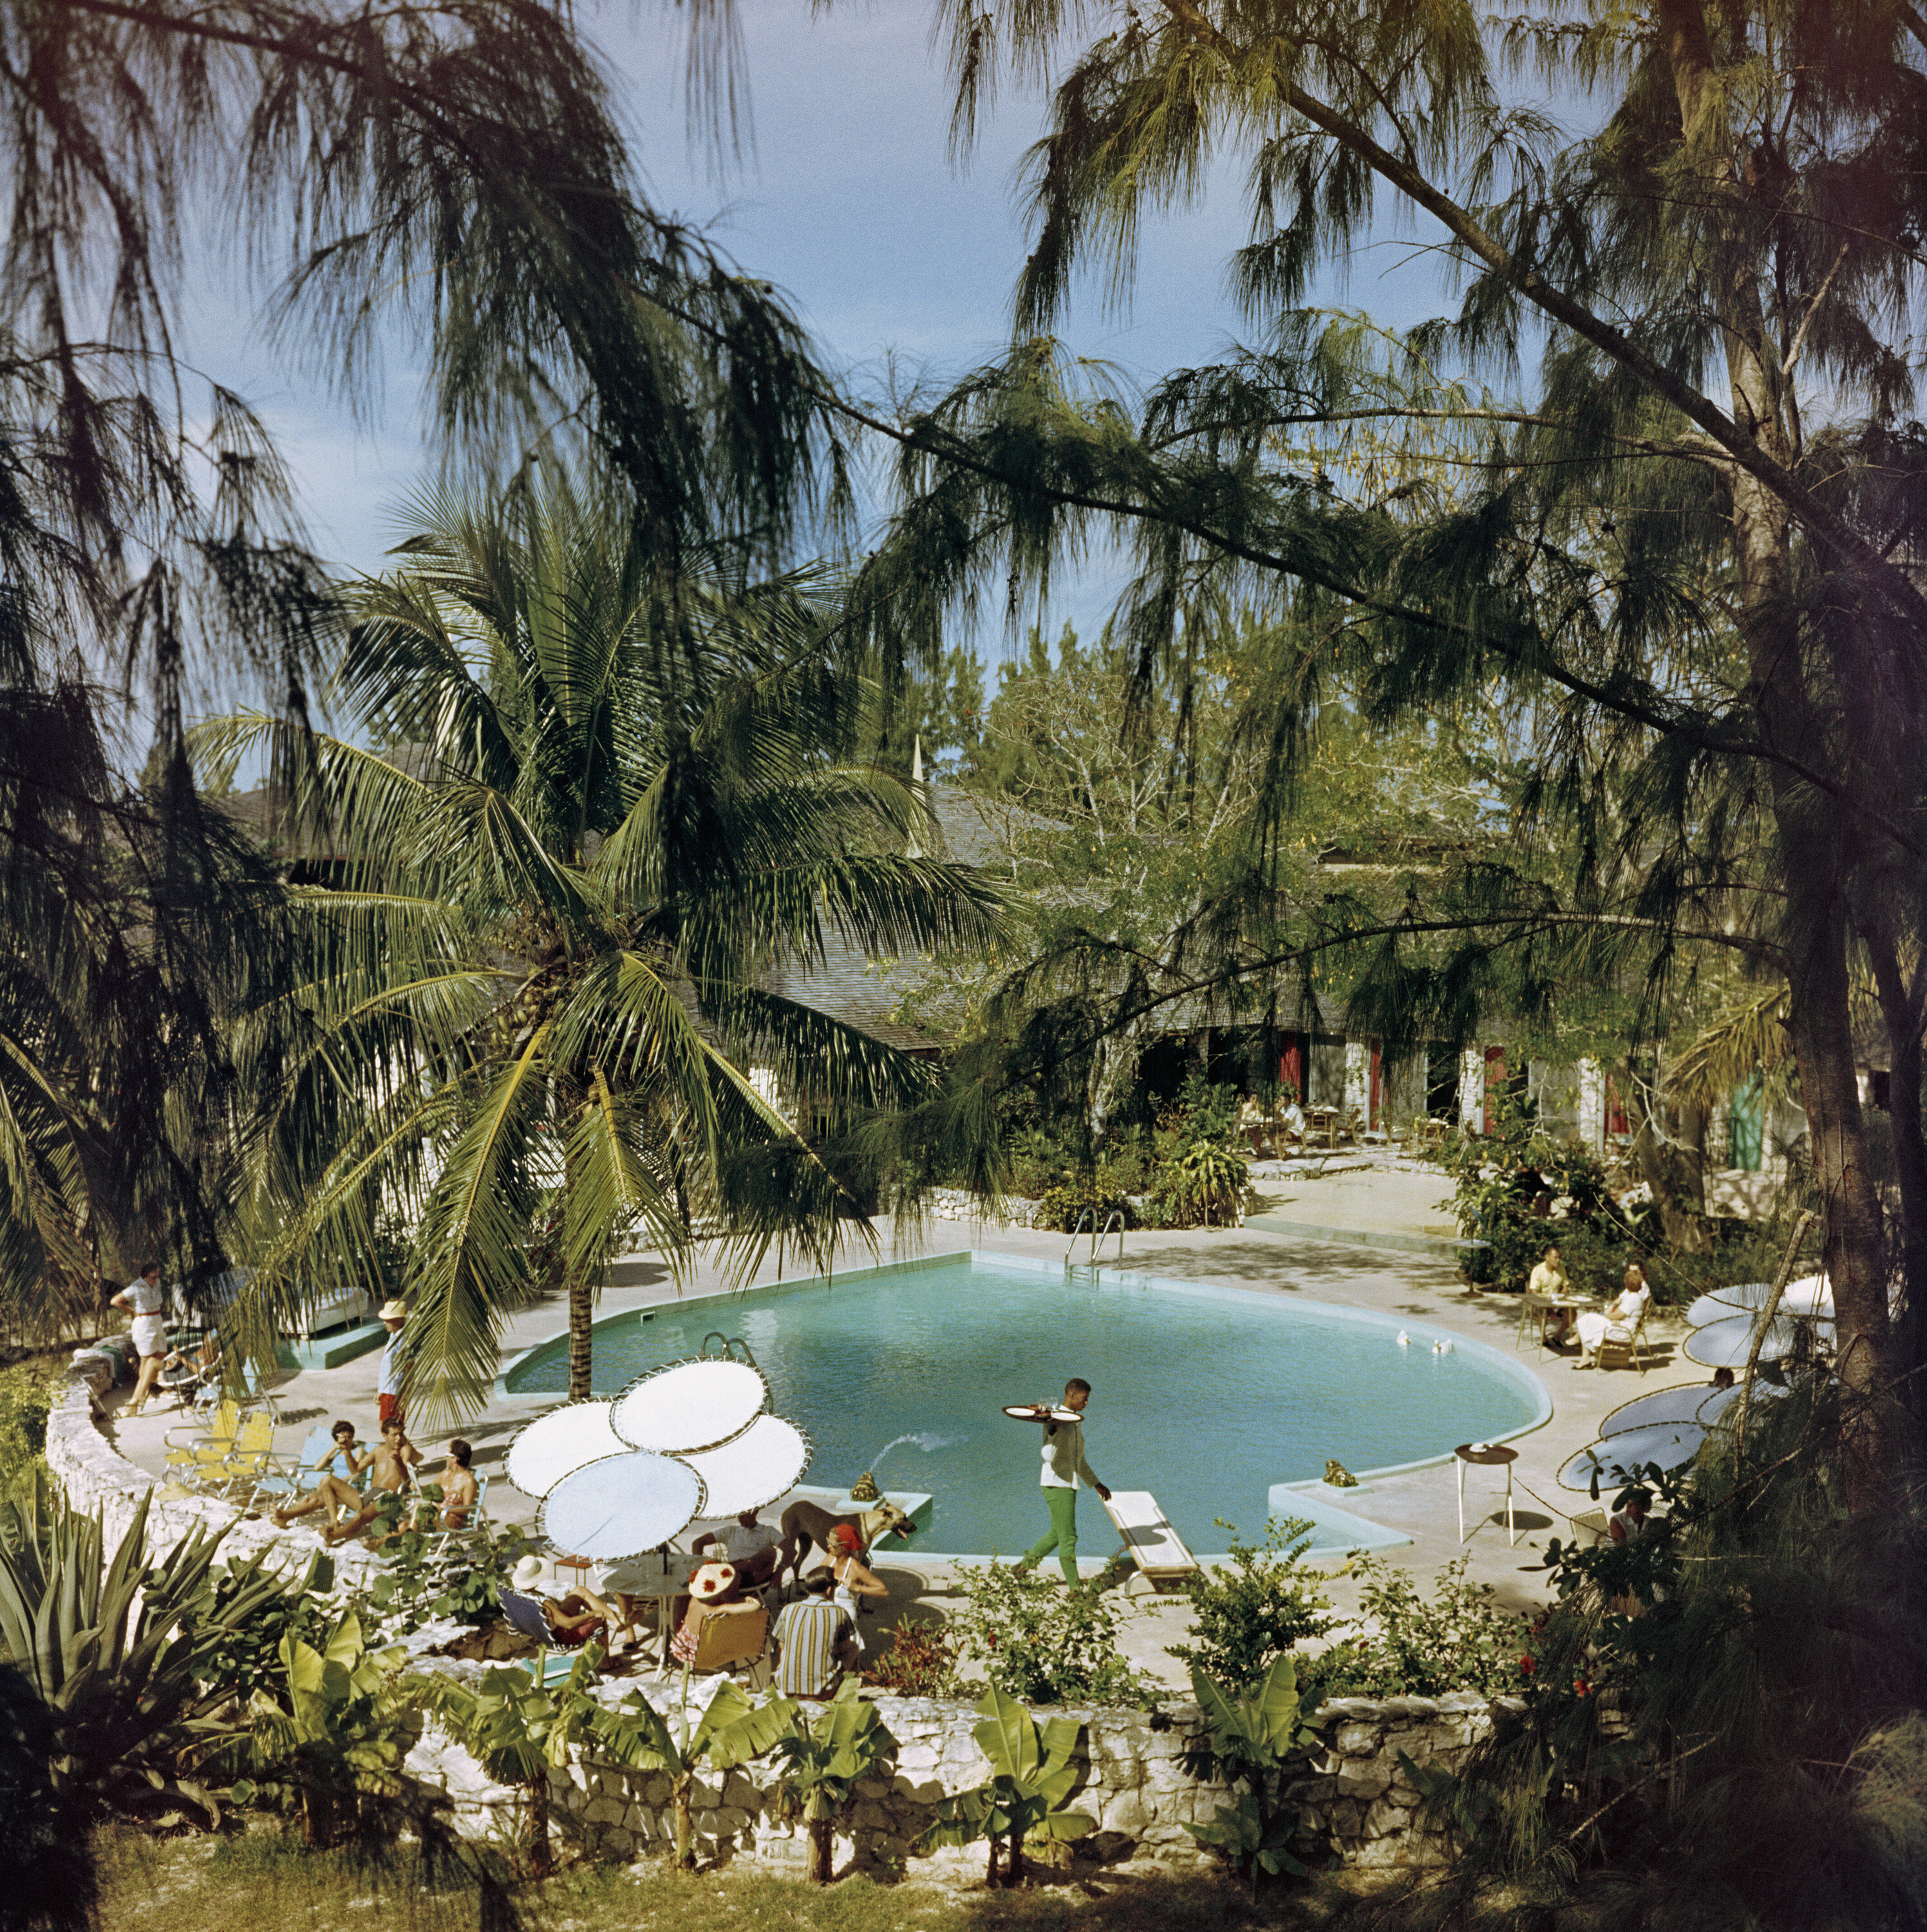 Отель French Leave, 1960 год. Фотограф Слим Ааронс